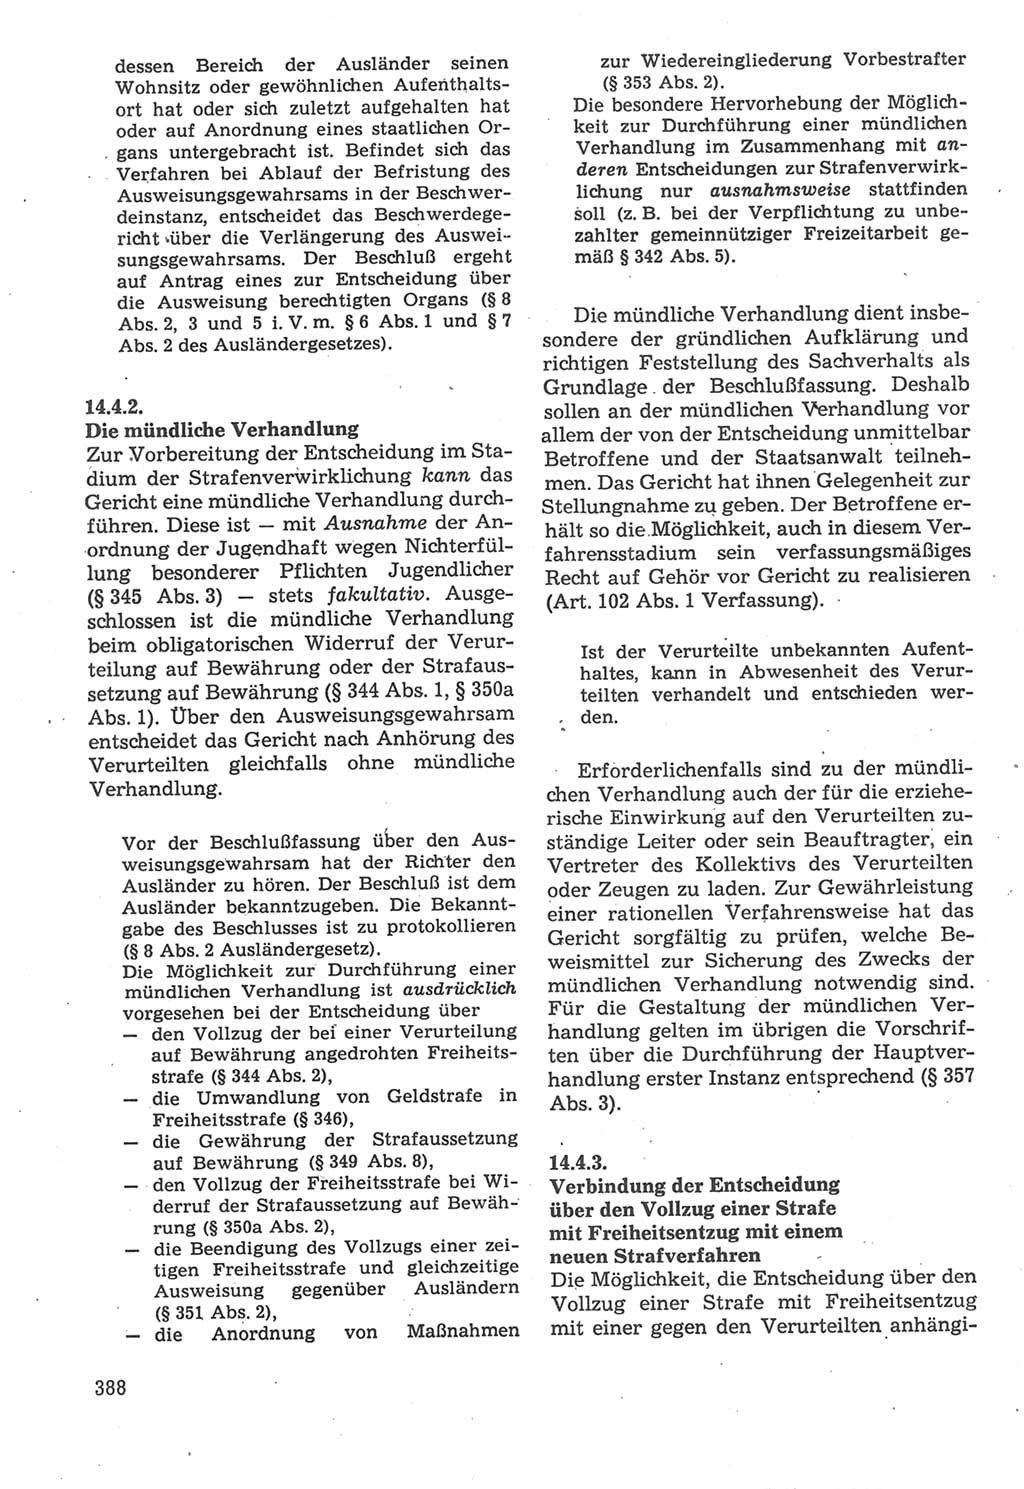 Strafverfahrensrecht [Deutsche Demokratische Republik (DDR)], Lehrbuch 1987, Seite 388 (Strafverf.-R. DDR Lb. 1987, S. 388)